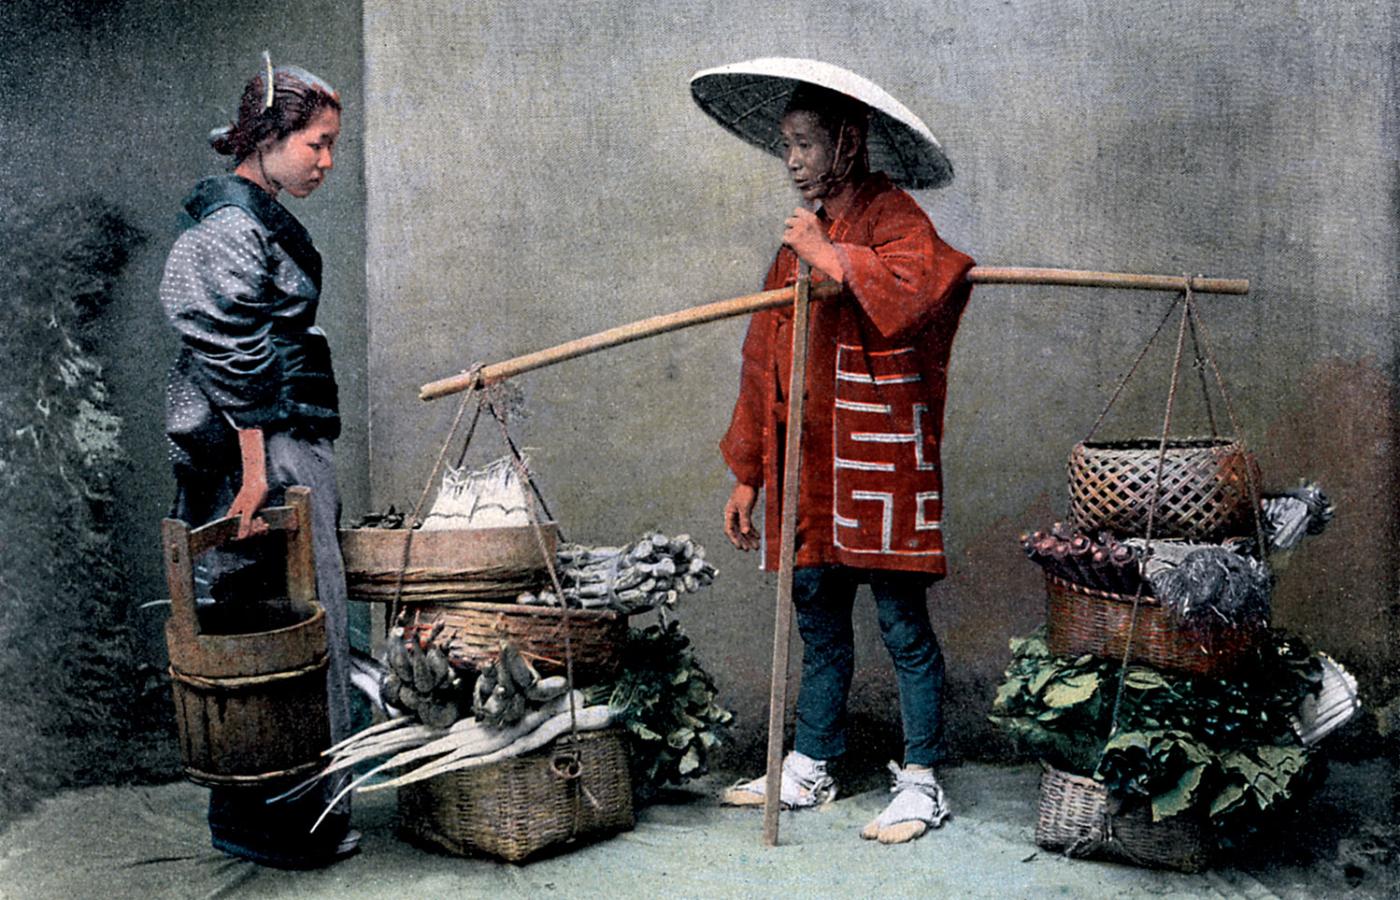 Sprzedawca warzyw; fot. z ok. 1890 r.